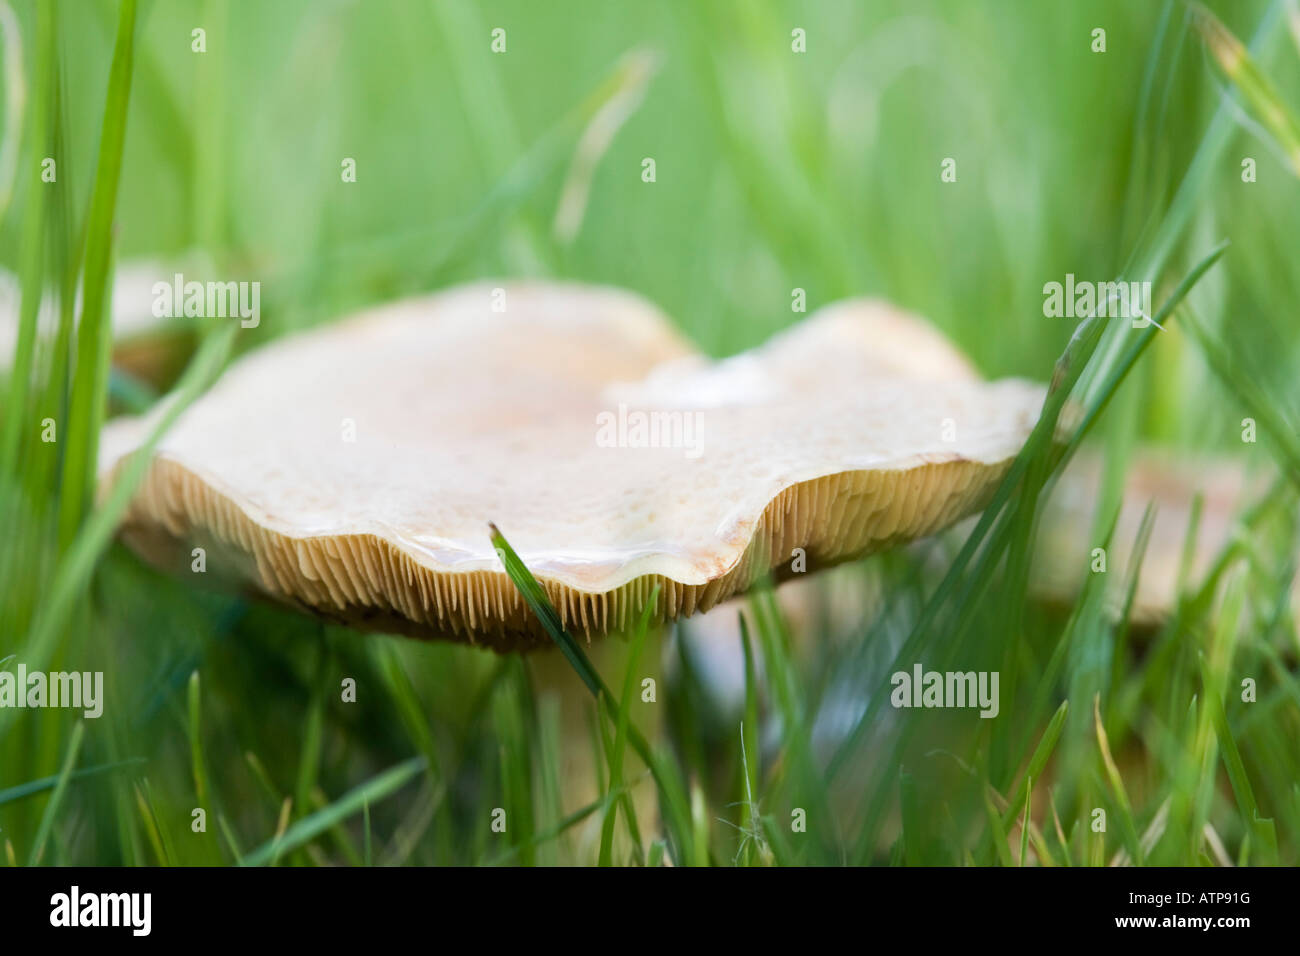 In der Nähe der Kiemen von Wiese Waxcap (Hygrocybe pratensis) Pilz in Garten Rasen Gras im Herbst wächst. Britische Pilze. Großbritannien Großbritannien Stockfoto